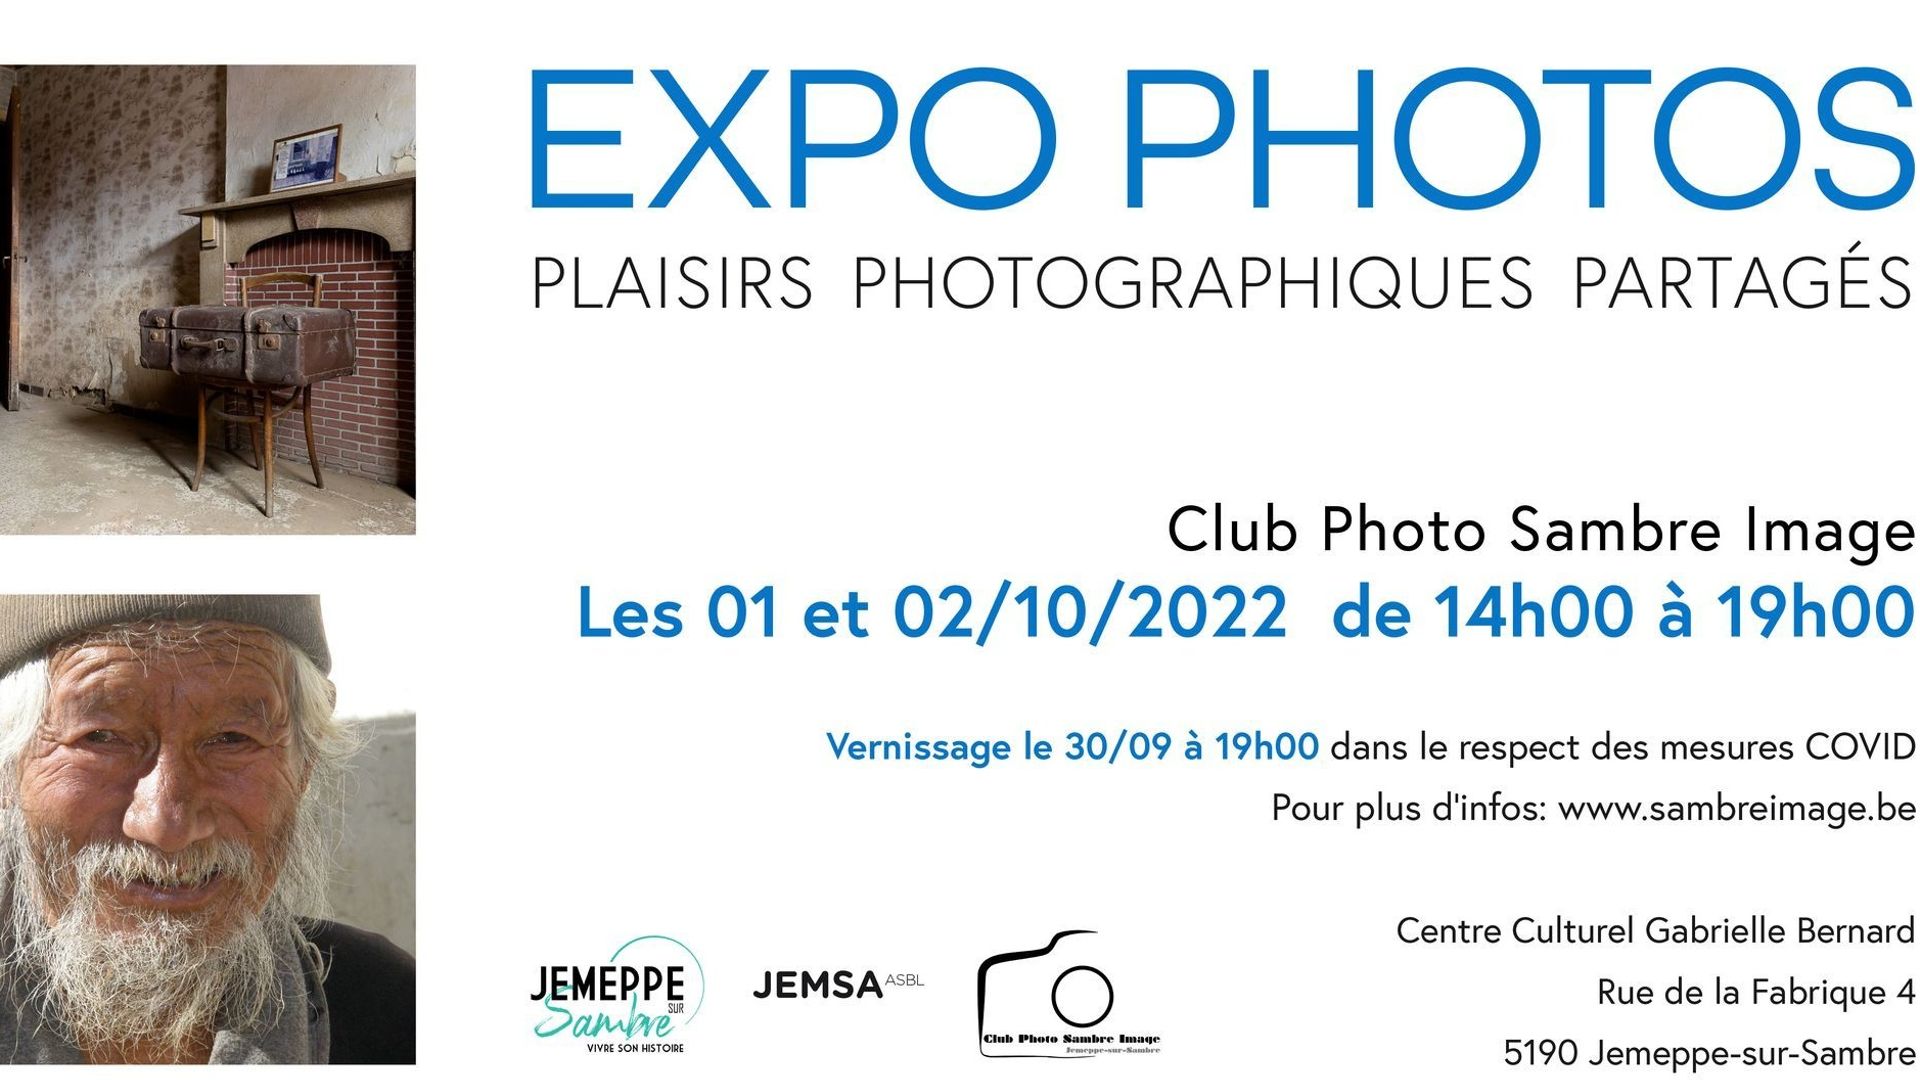 Exposition "Plaisirs photographiques partagés"